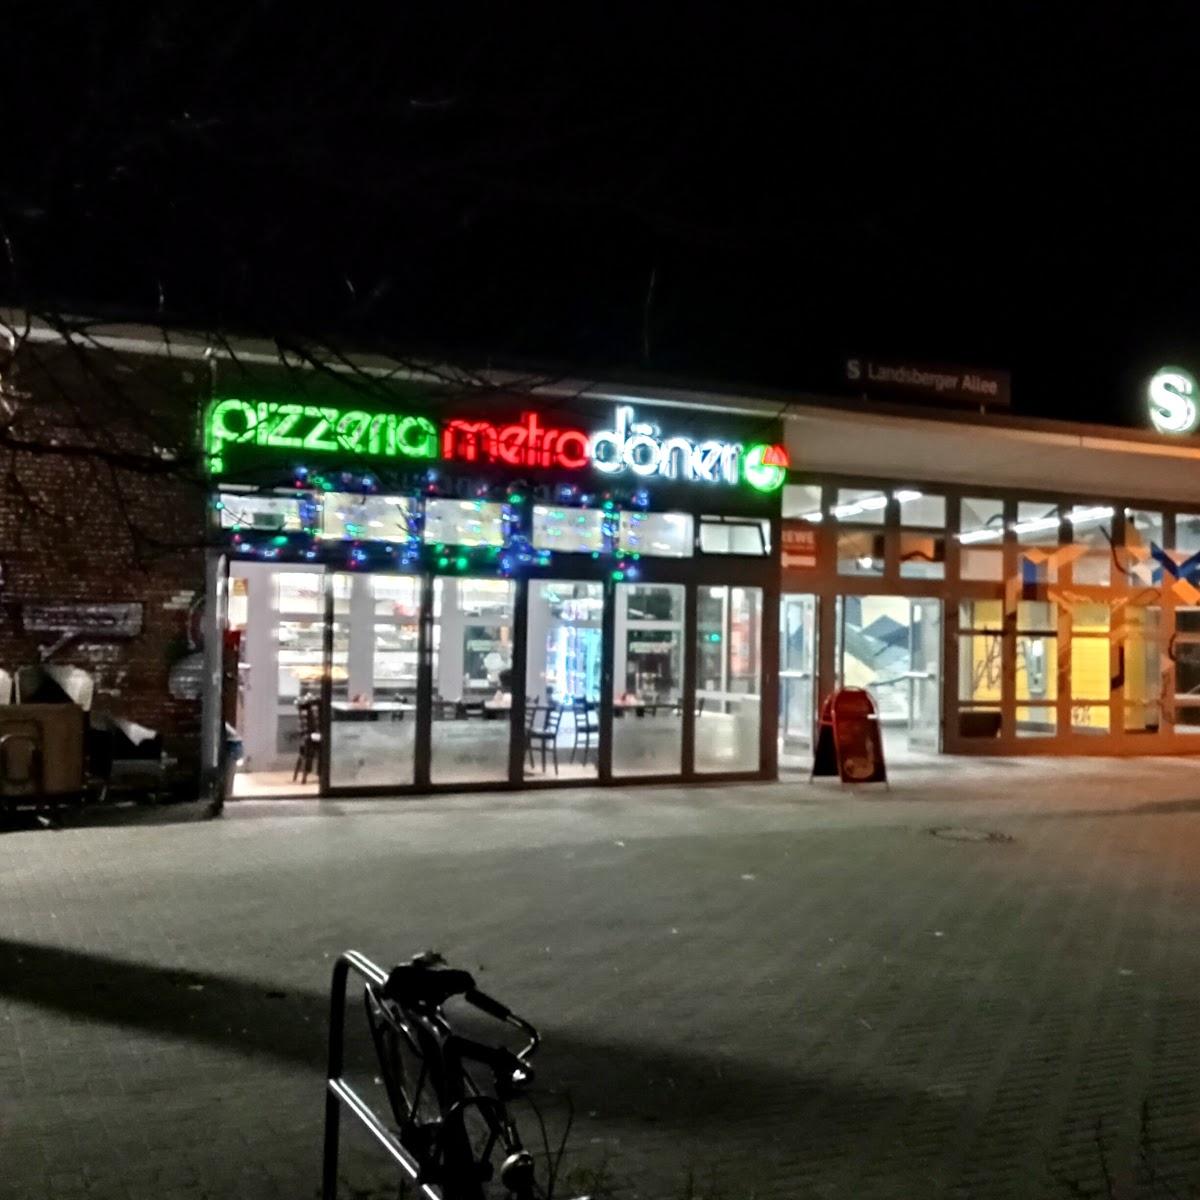 Restaurant "Pizzeria Metro Döner" in Berlin